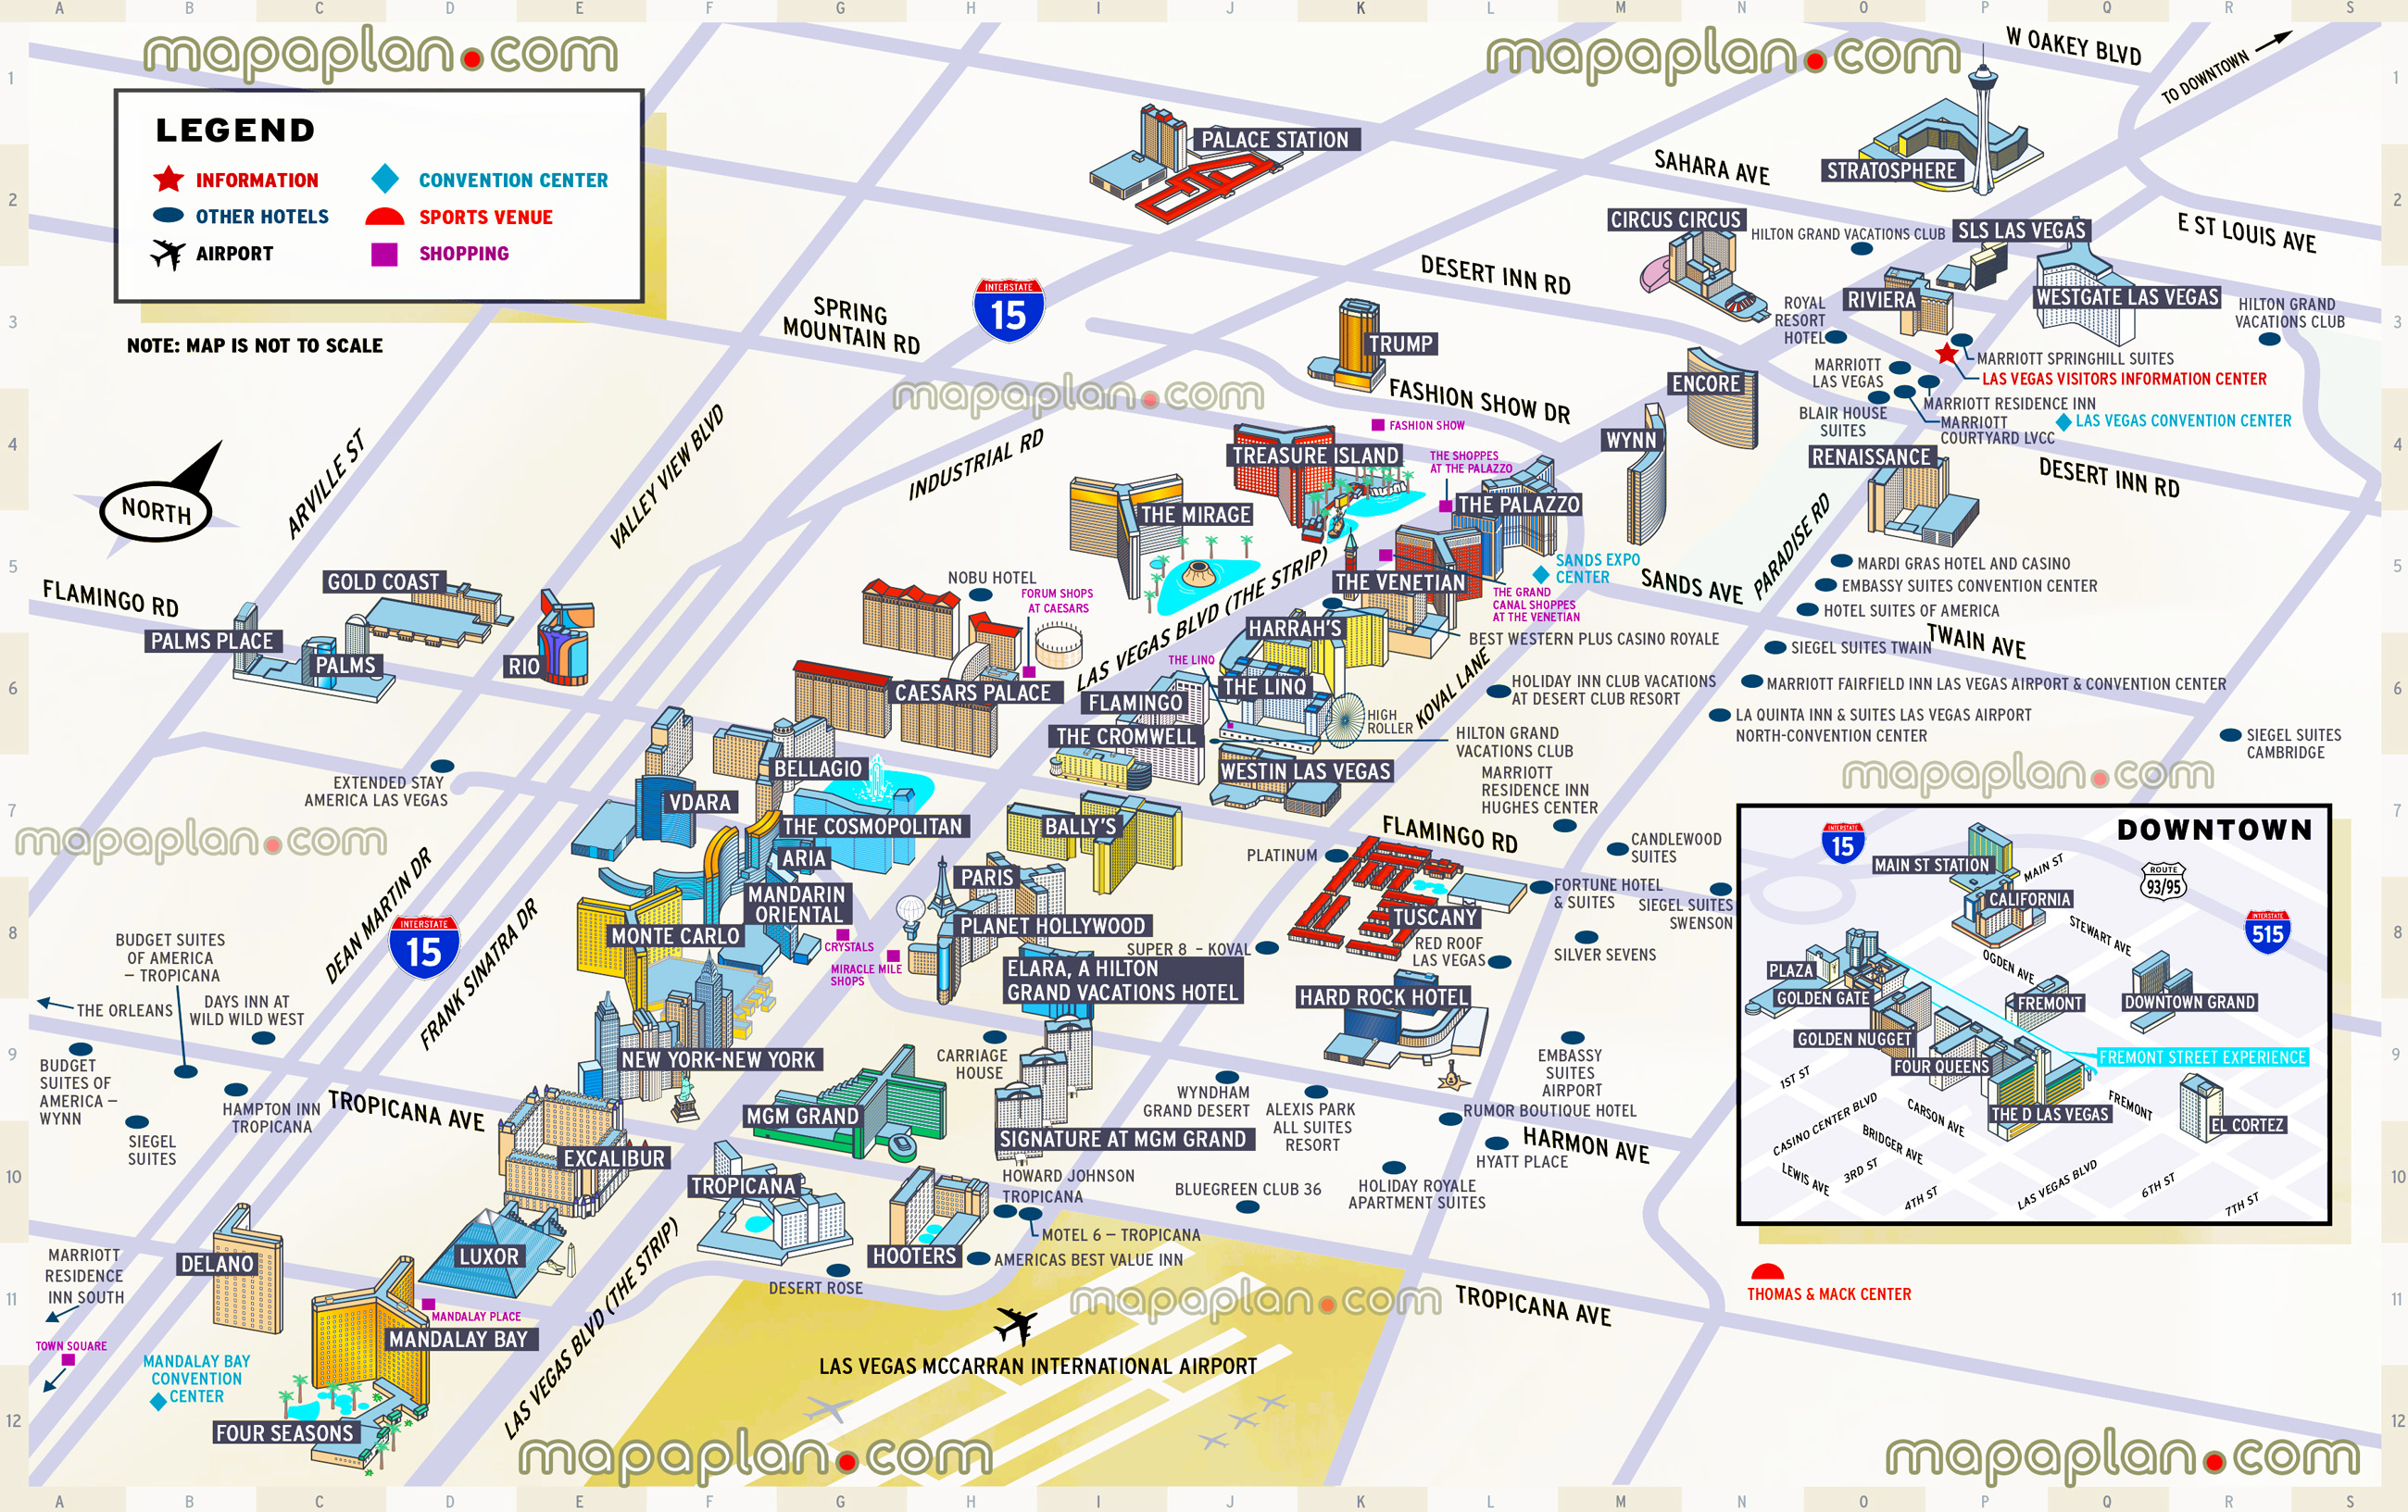 Las Vegas Casinos Map